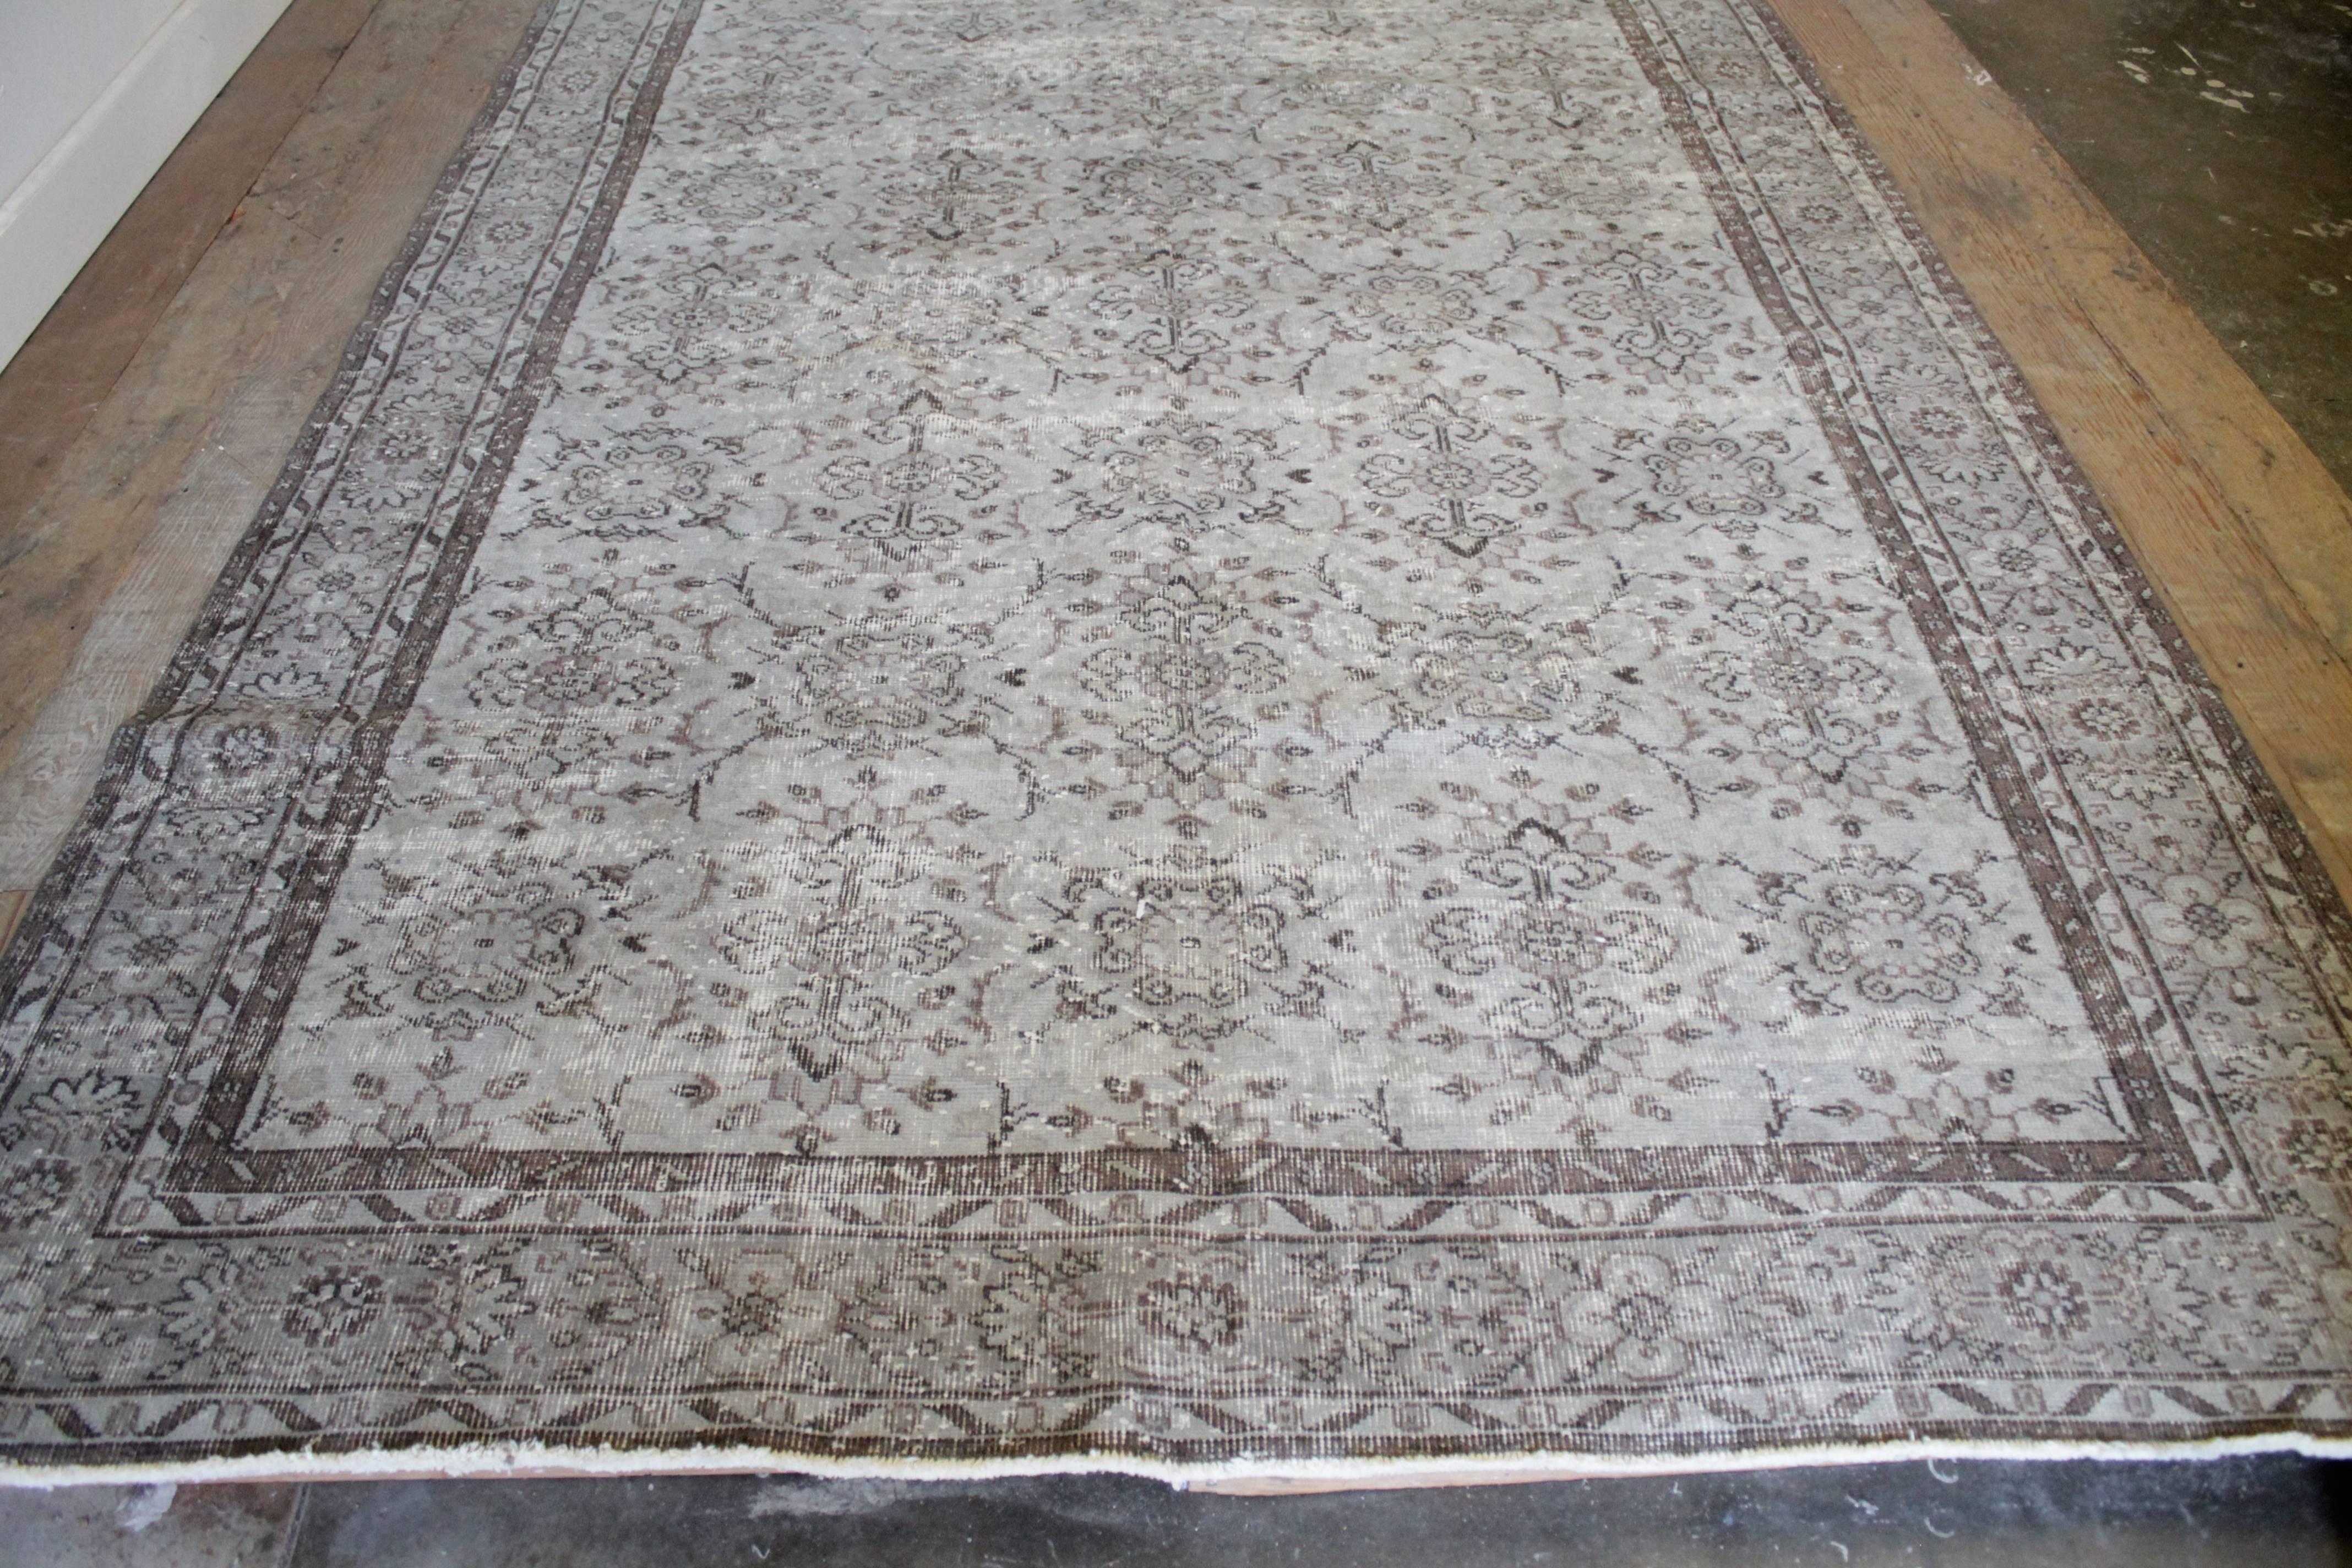 Schöne handgeknüpfte türkische Teppich ist blass grau blaue Farbe und verblasst braun. Schöne Schneckenmuster und durchgehend perfekt verblasst. Maße: 77